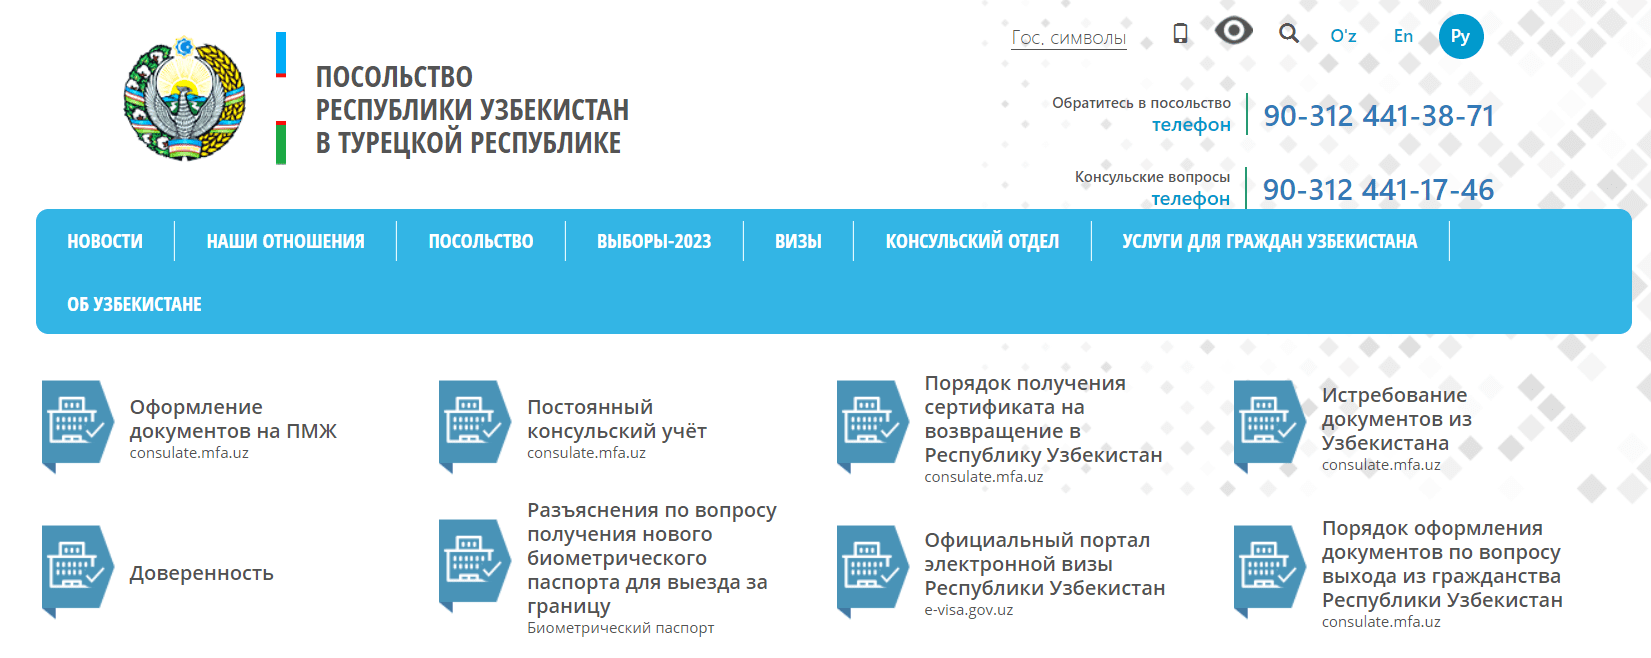 Посольство Республики Узбекистан в Турции (uzembassy.org.tr) - официальный сайт